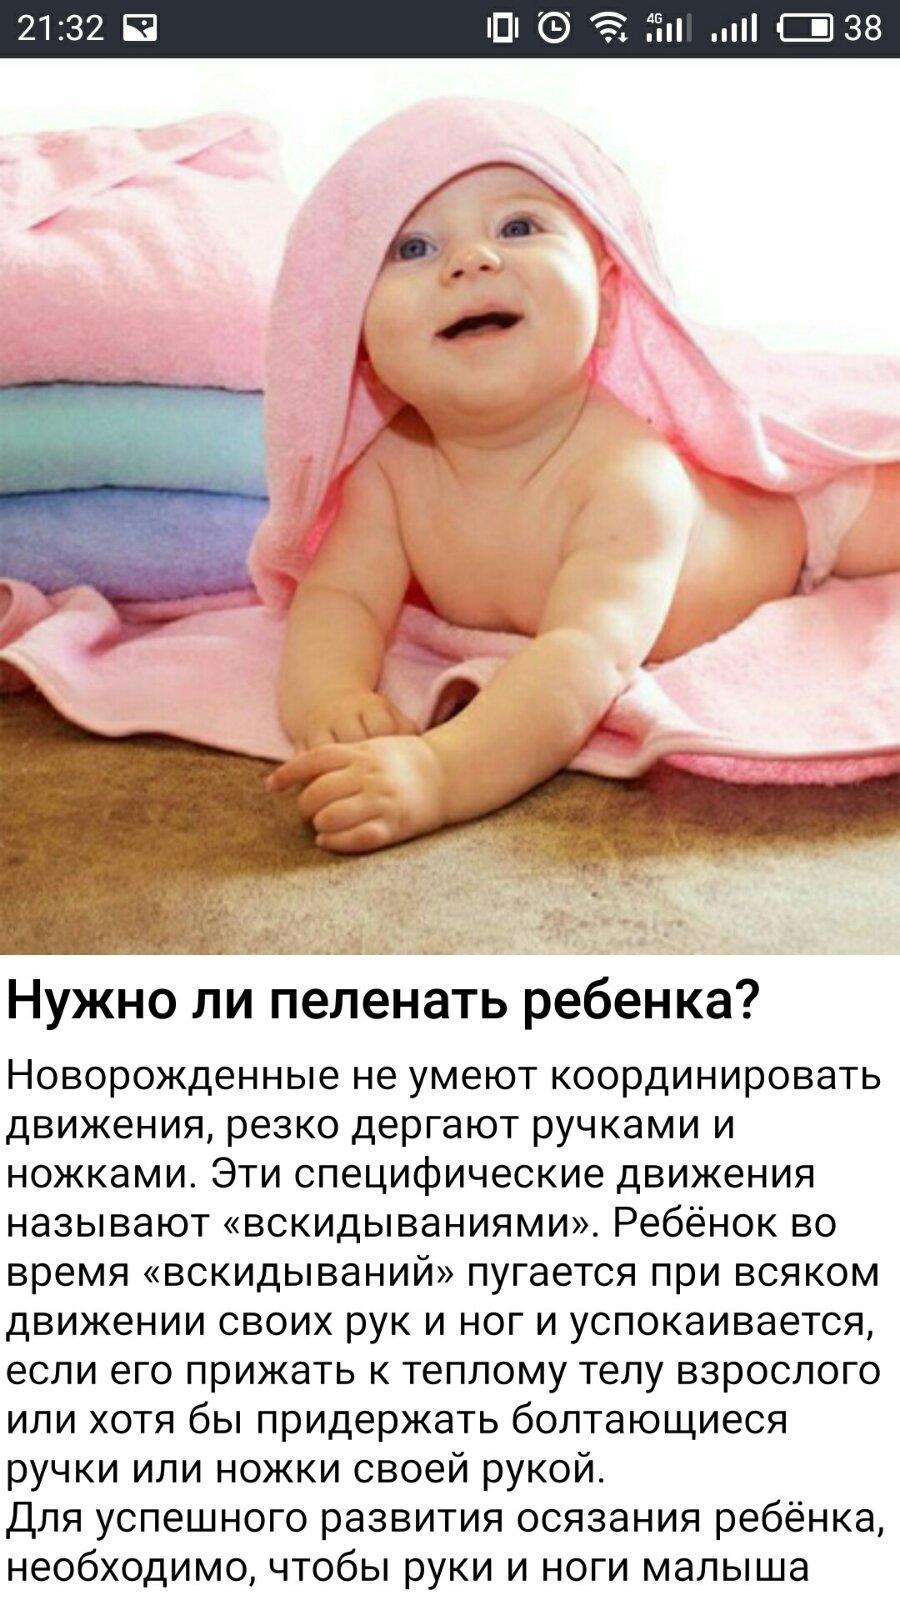 Новорожденный малыш Уход за ребенком Развитие Сон 1.0 Screenshot 20